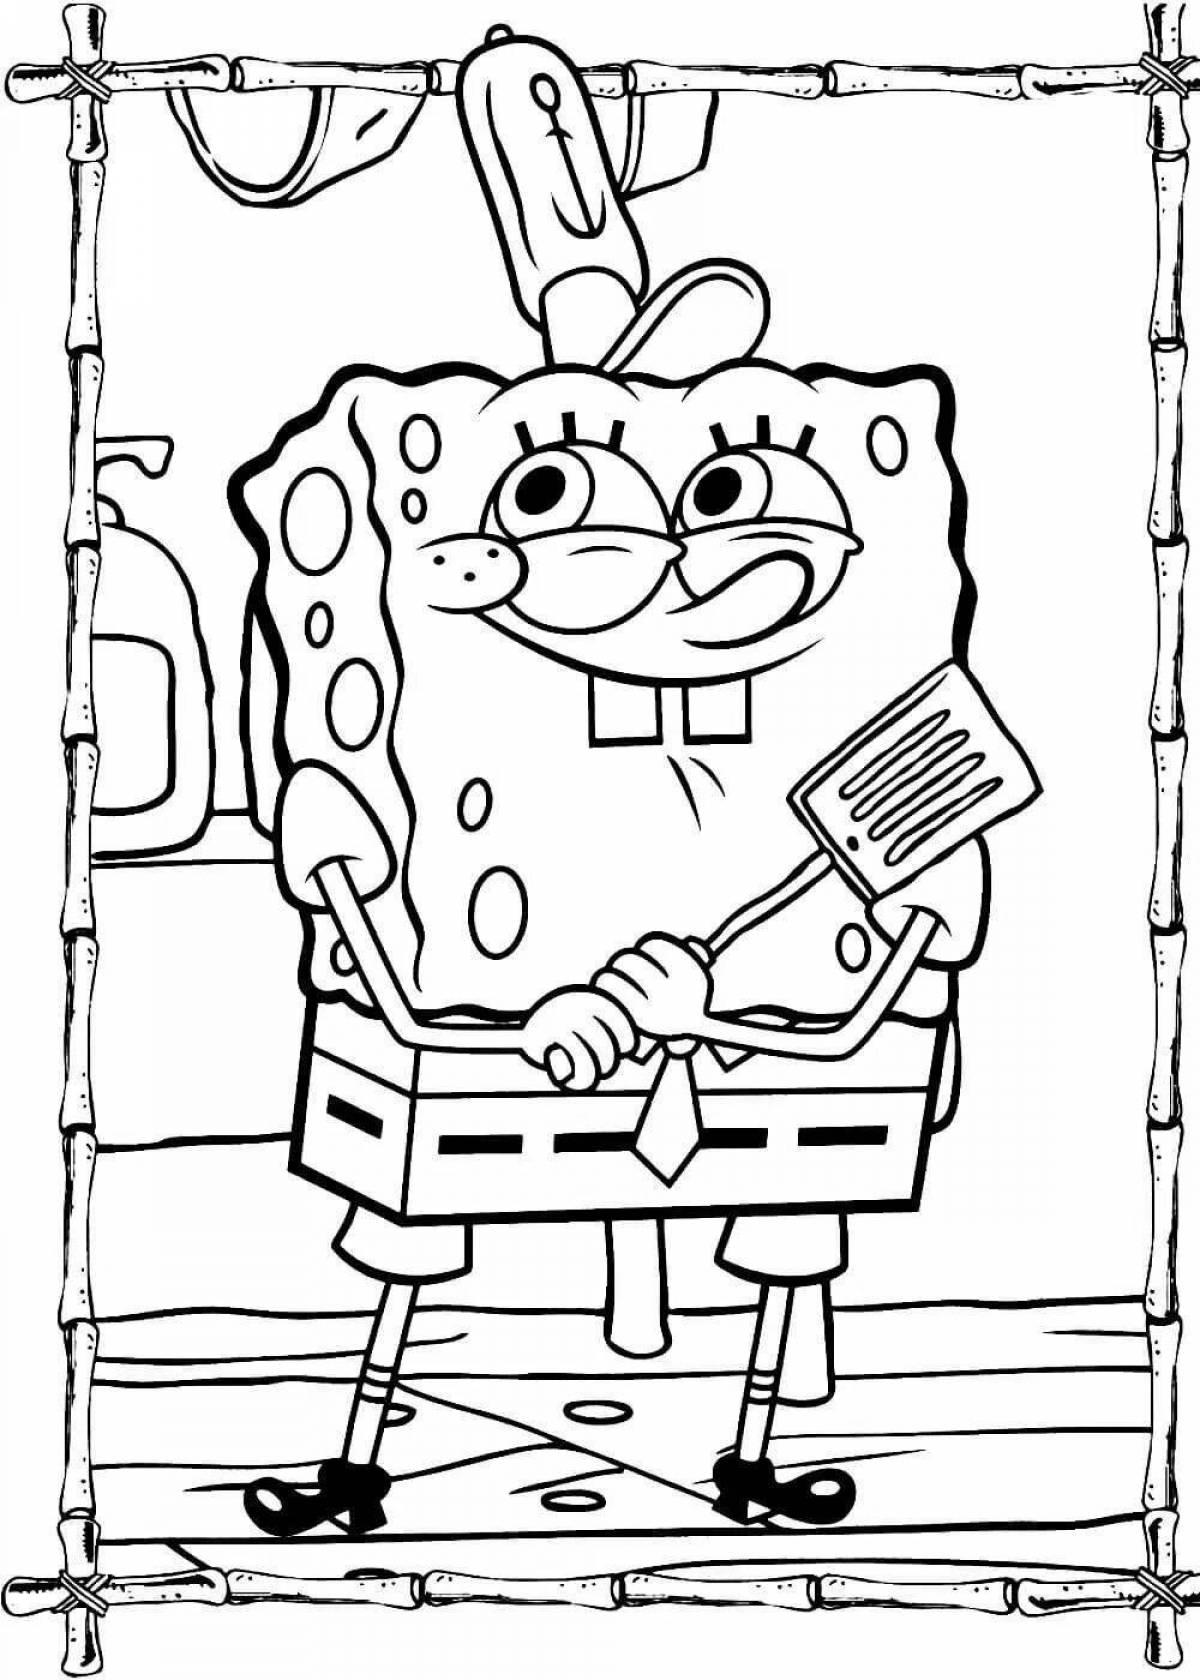 Spongebob fun coloring for kids